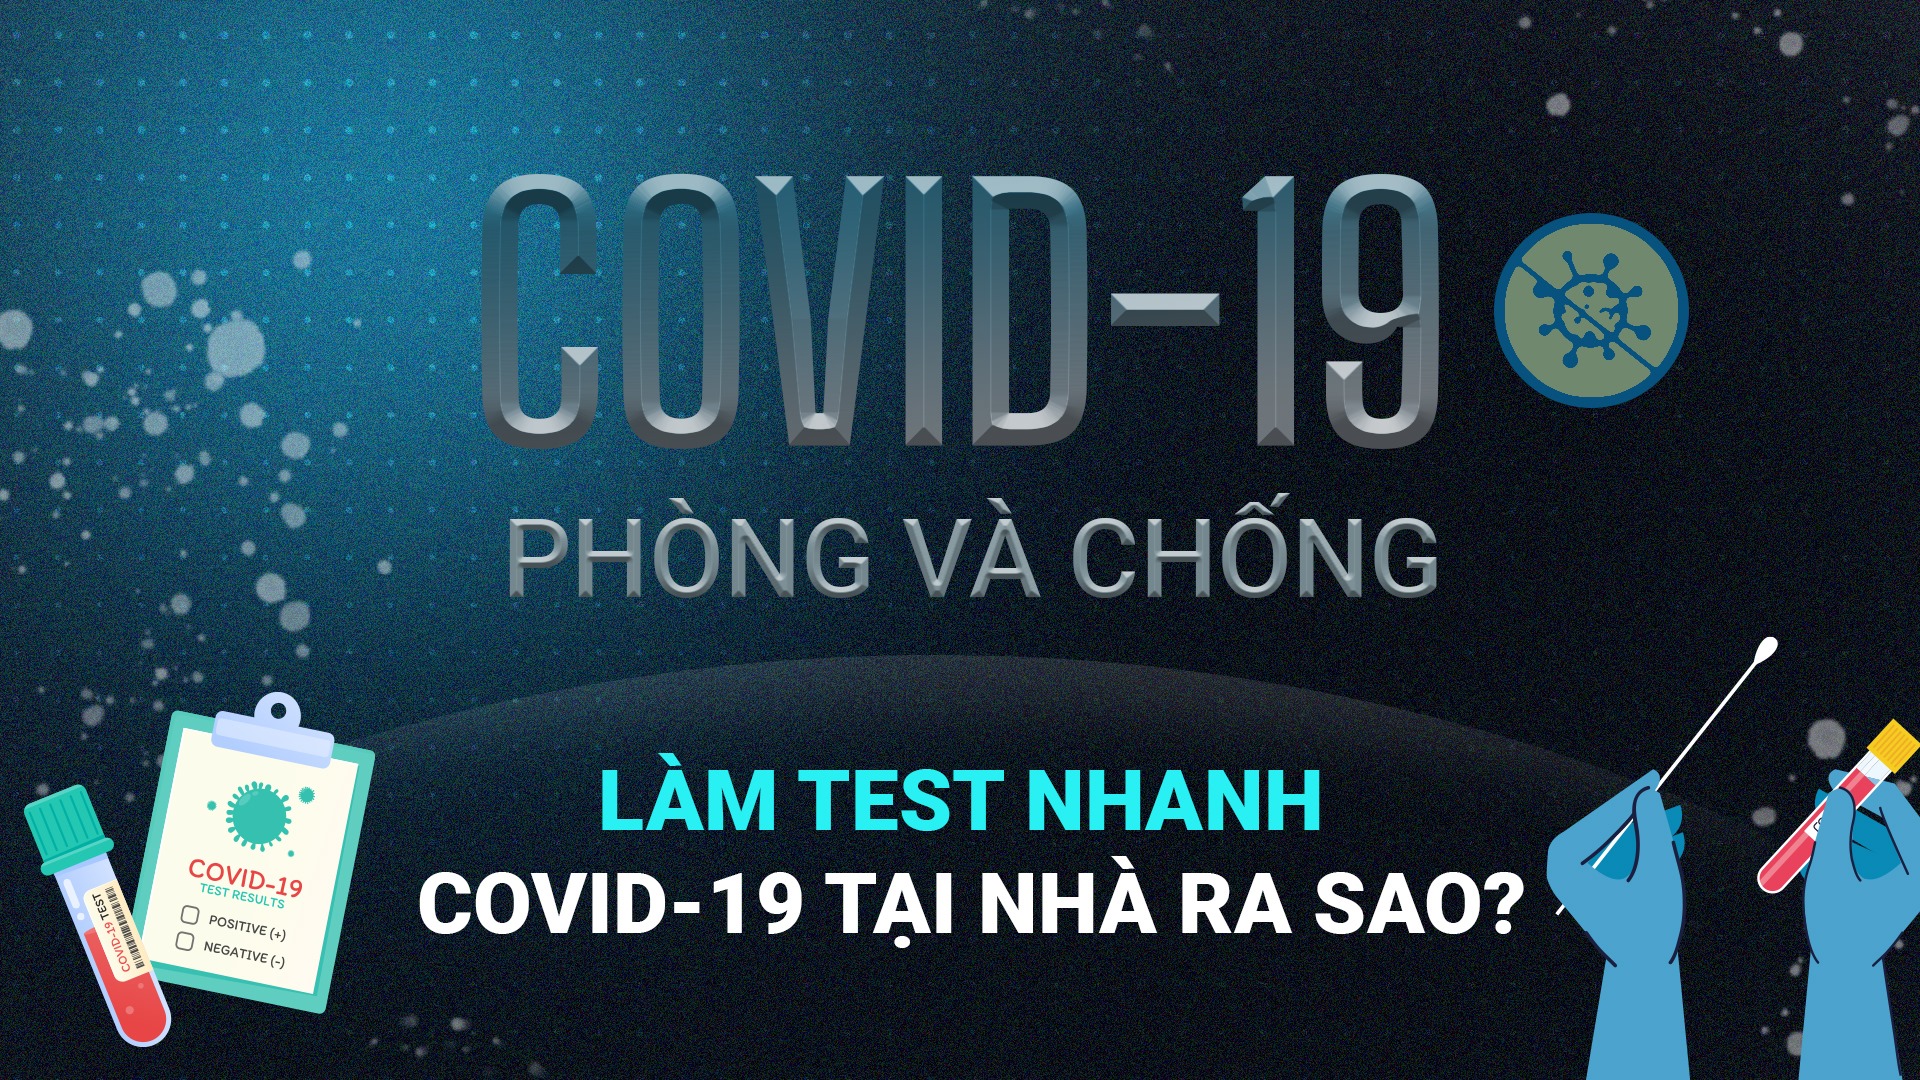 COVID-19 phòng và chống | Làm test nhanh COVID-19 tại nhà ra sao?